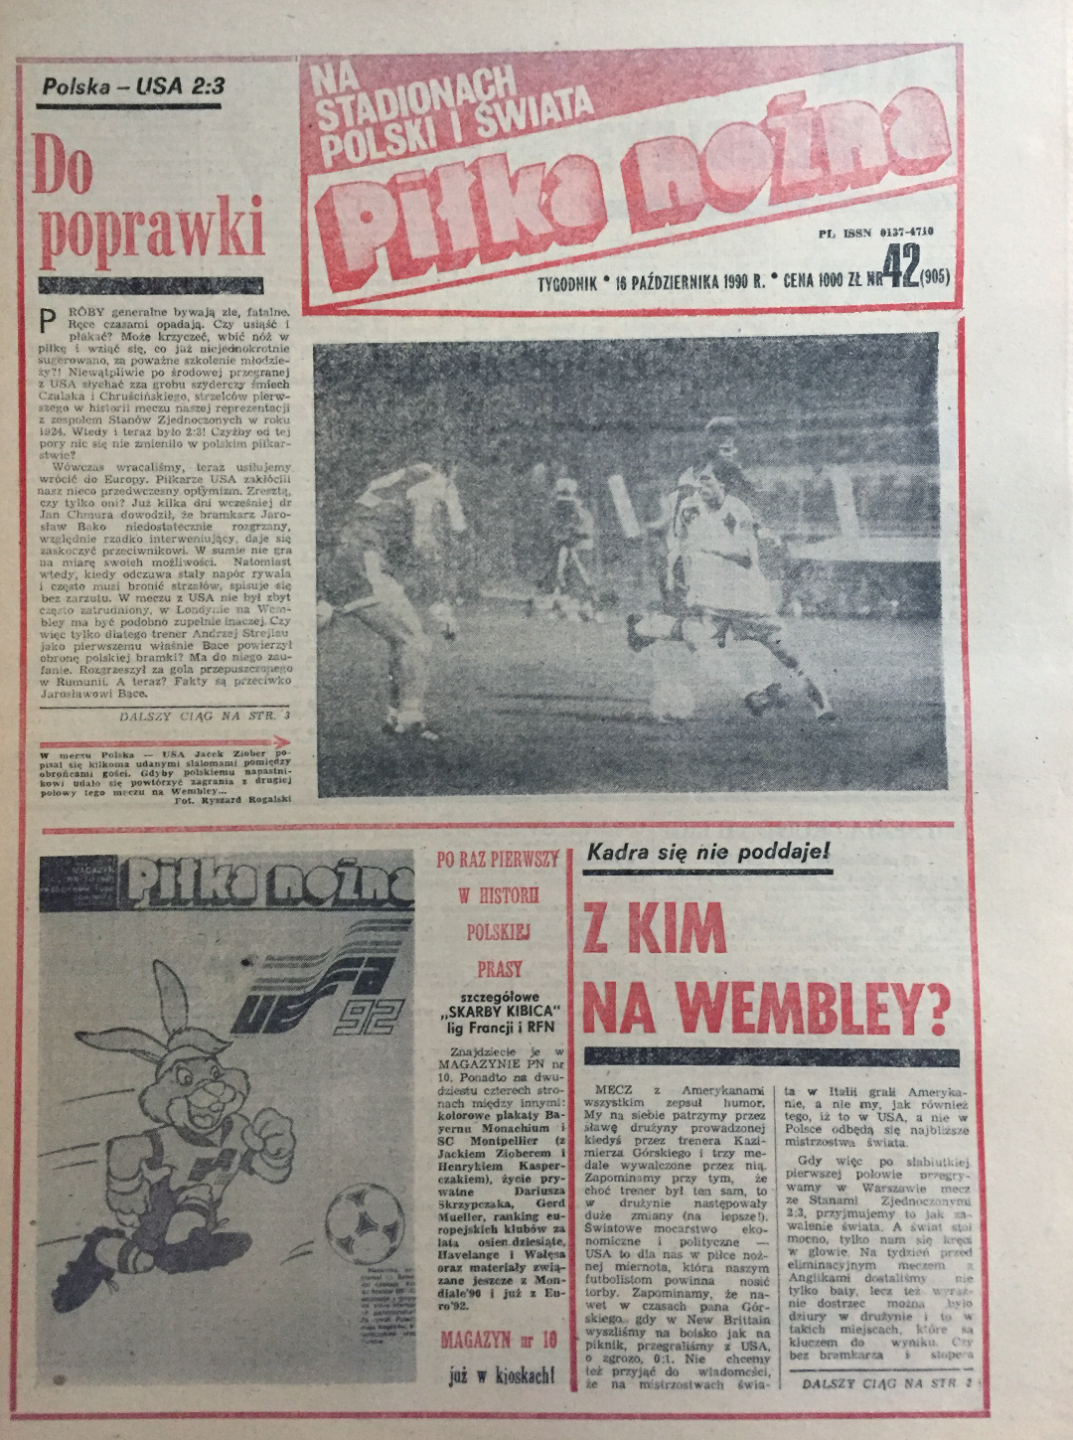 Okładka piłki nożnej po meczu polska - usa 2:3 (10.10.1990) 